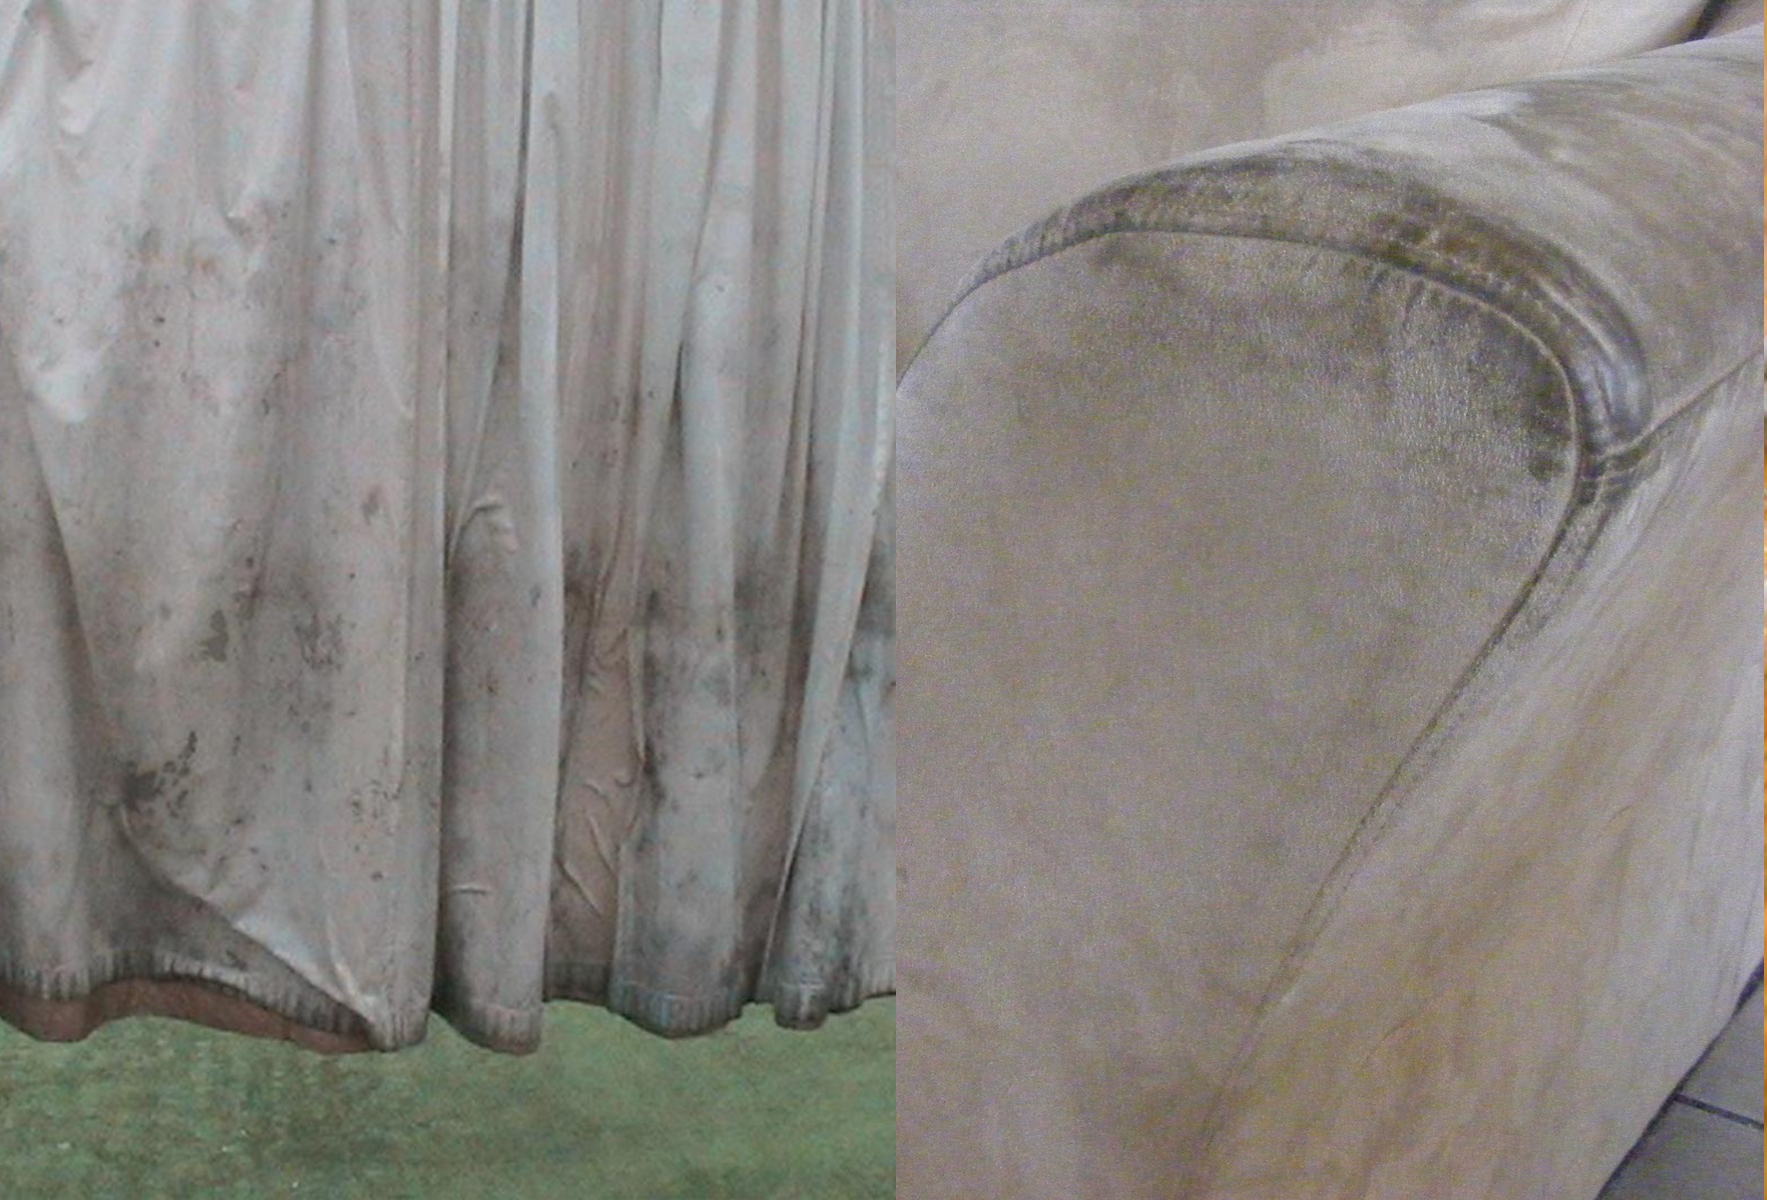 Σκόνη τρίχες και βρώμικα υφάσματα στο σαλόνι: Πως να το καθαρίσετε το από άκρη σε άκρη